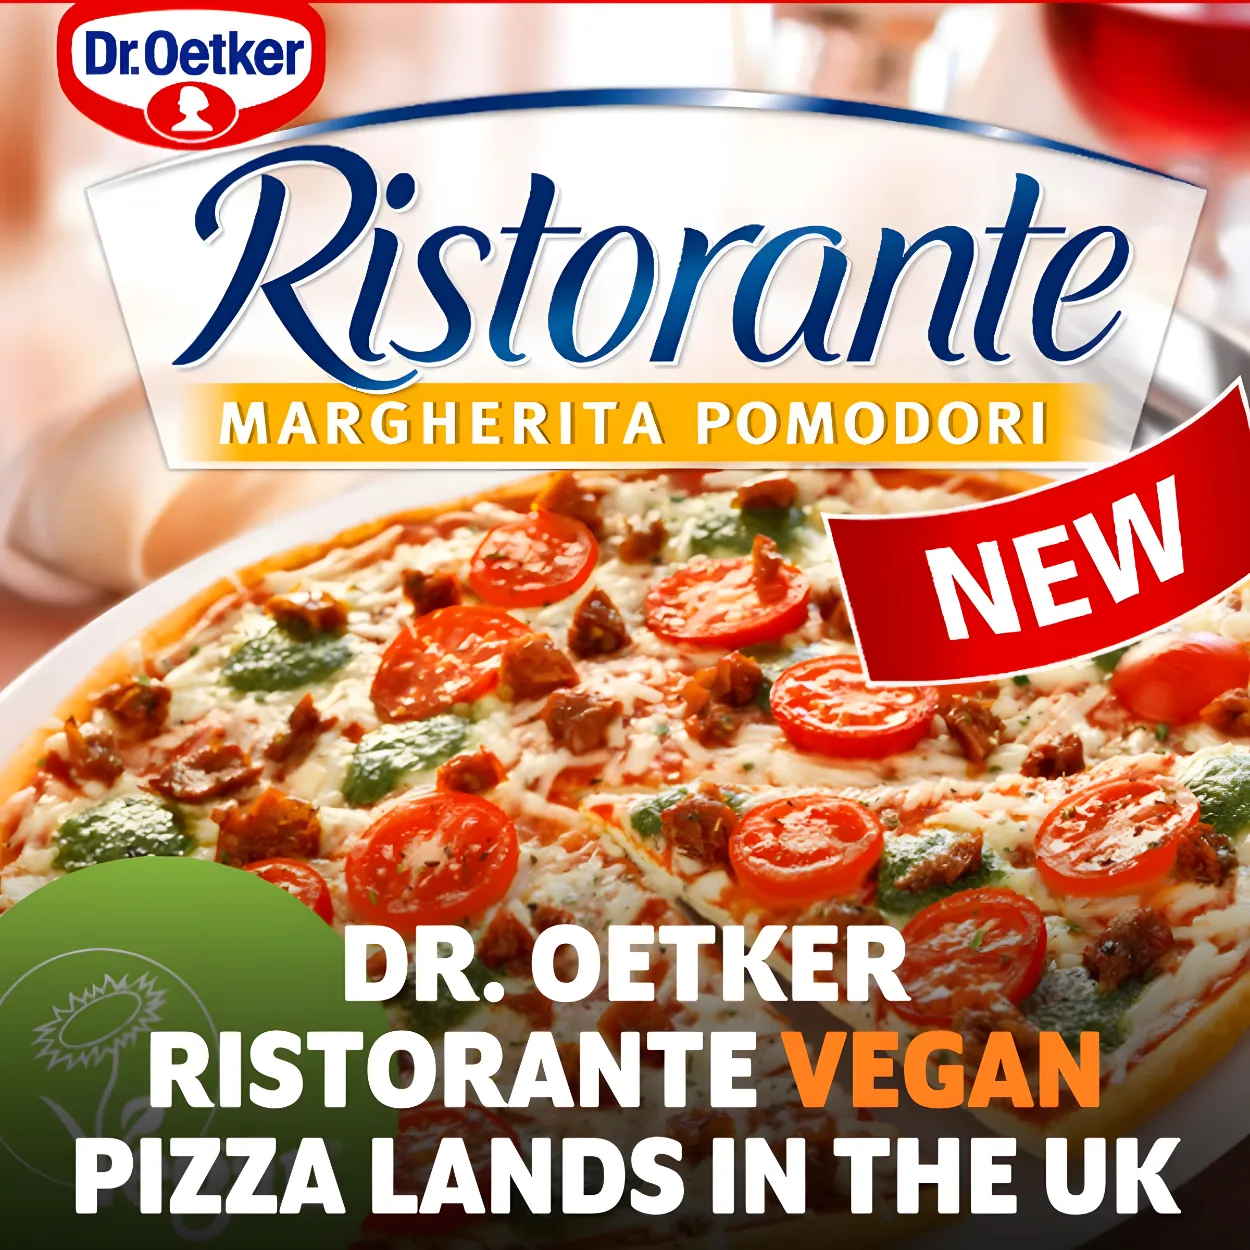 Free Dr. Oetker Ristorante Vegan Pizza